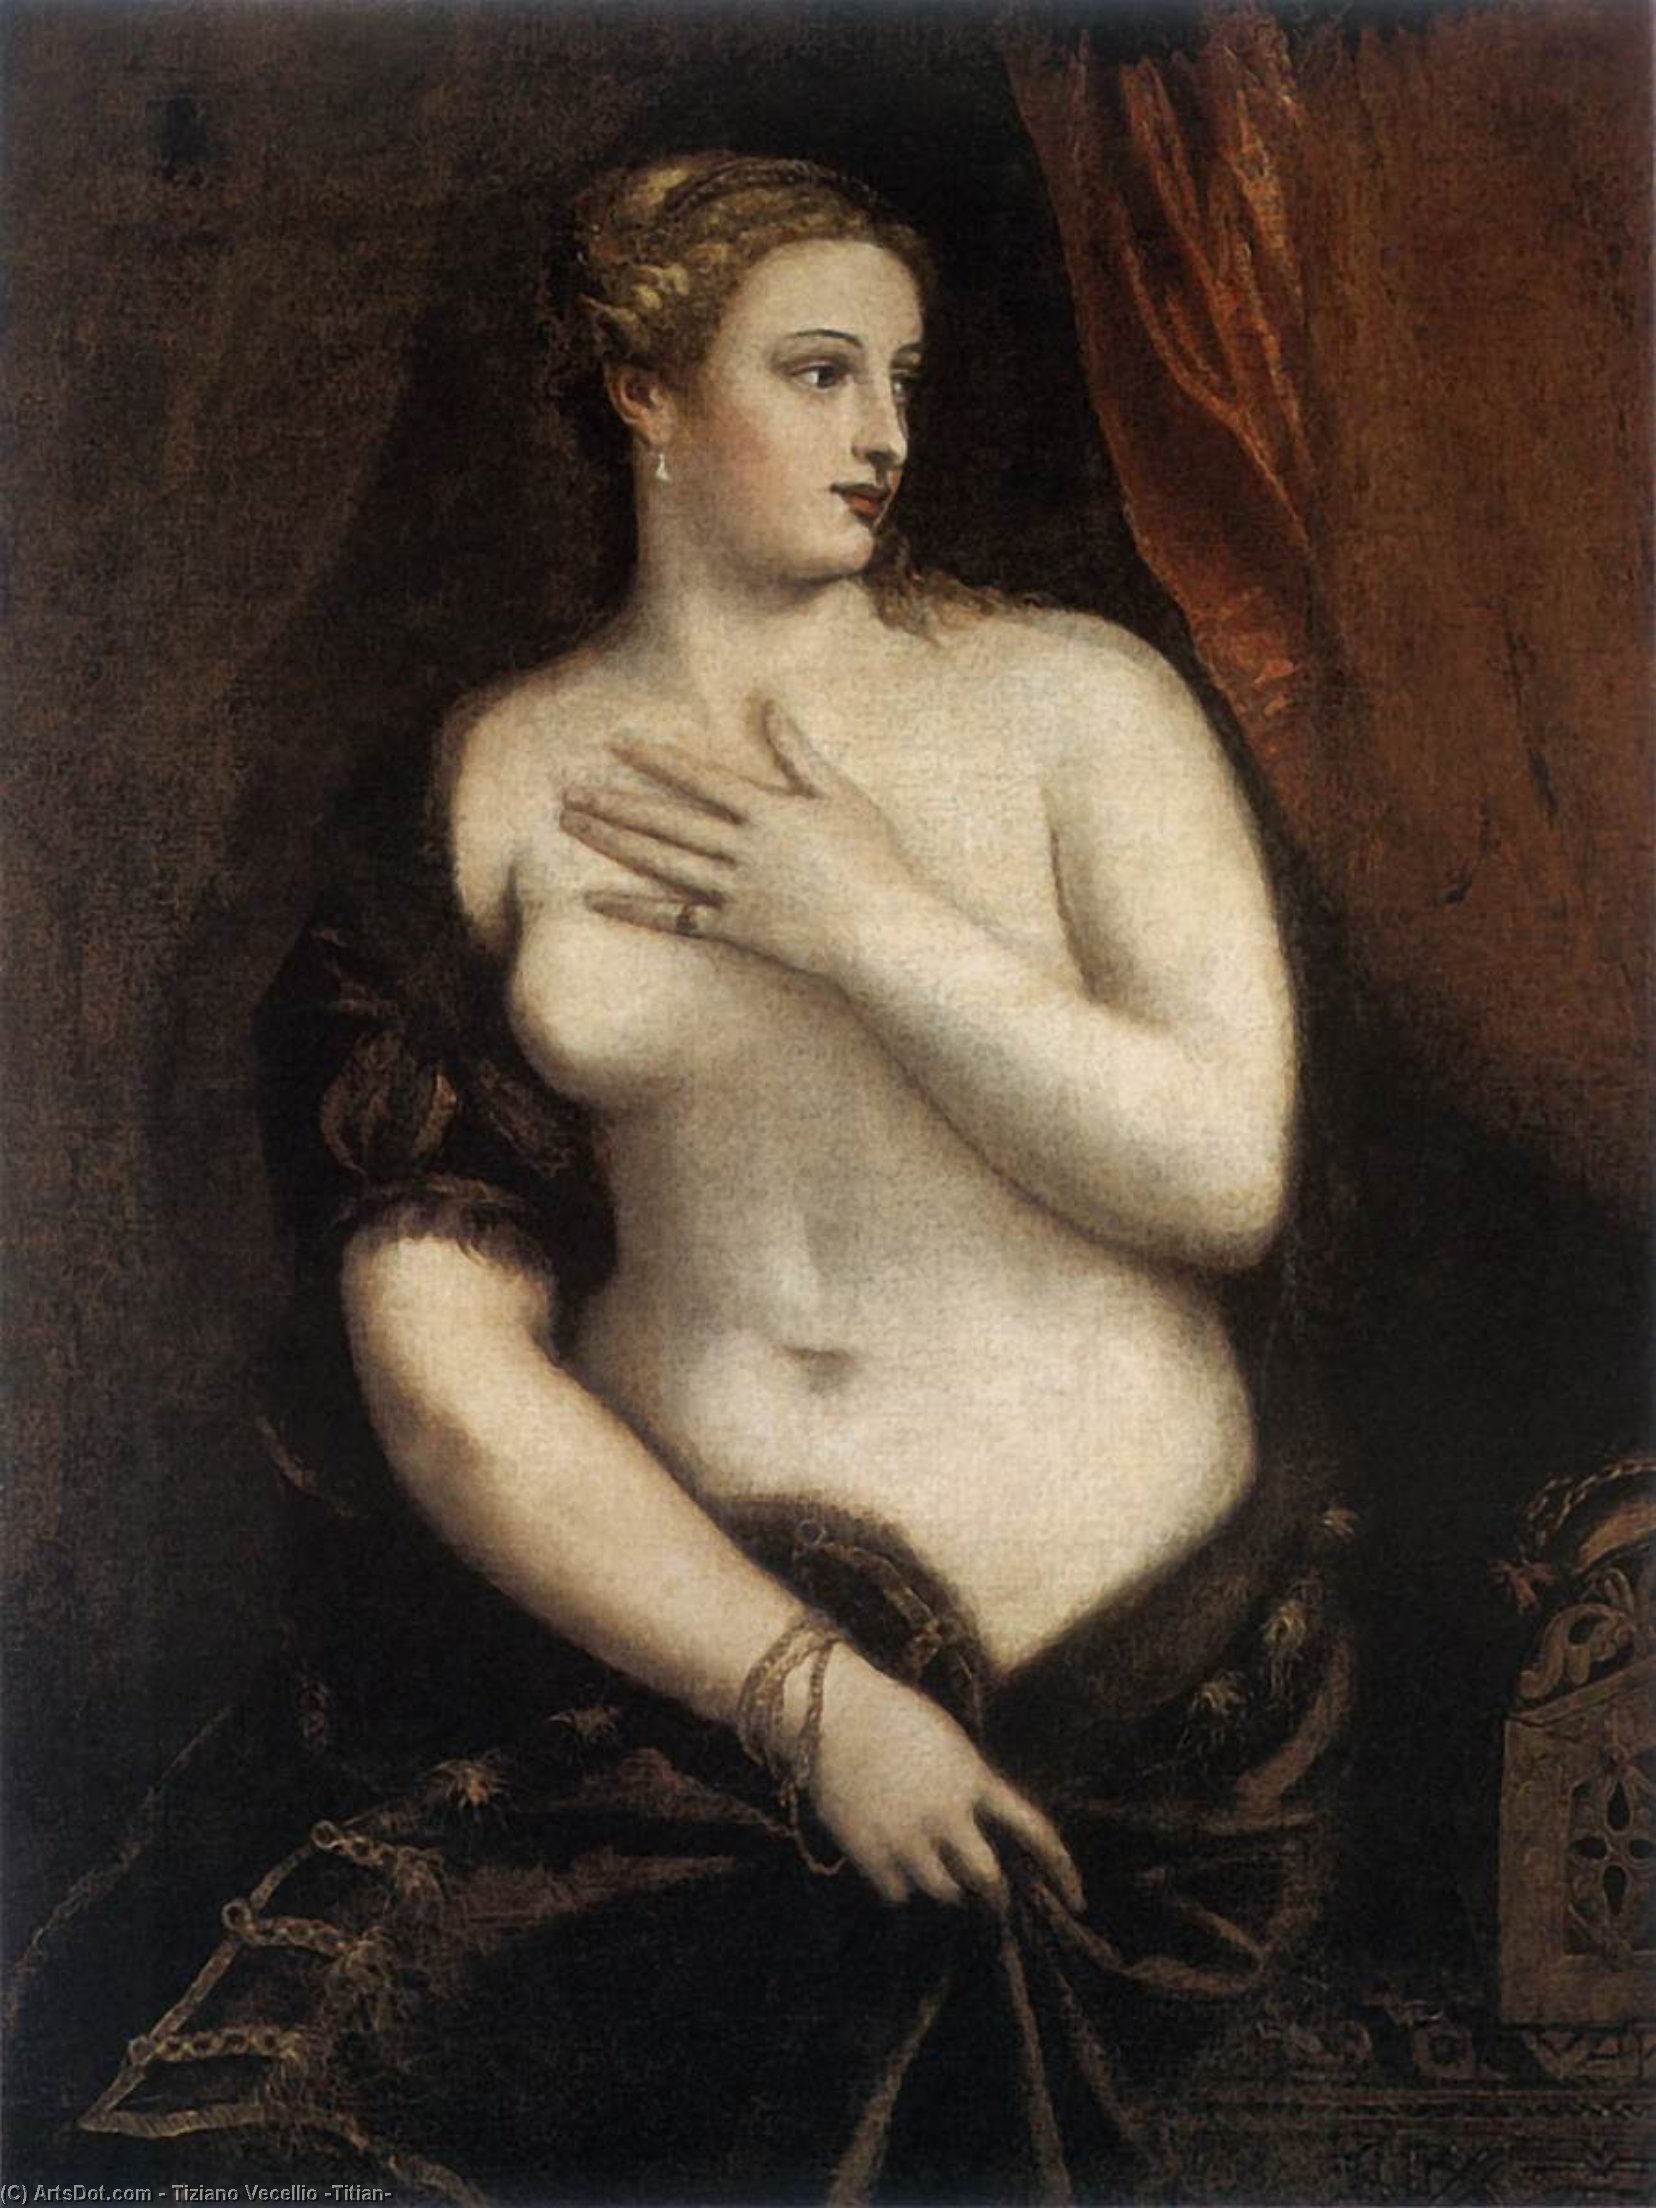 WikiOO.org - Enciclopedia of Fine Arts - Pictura, lucrări de artă Tiziano Vecellio (Titian) - Venus with a Mirror